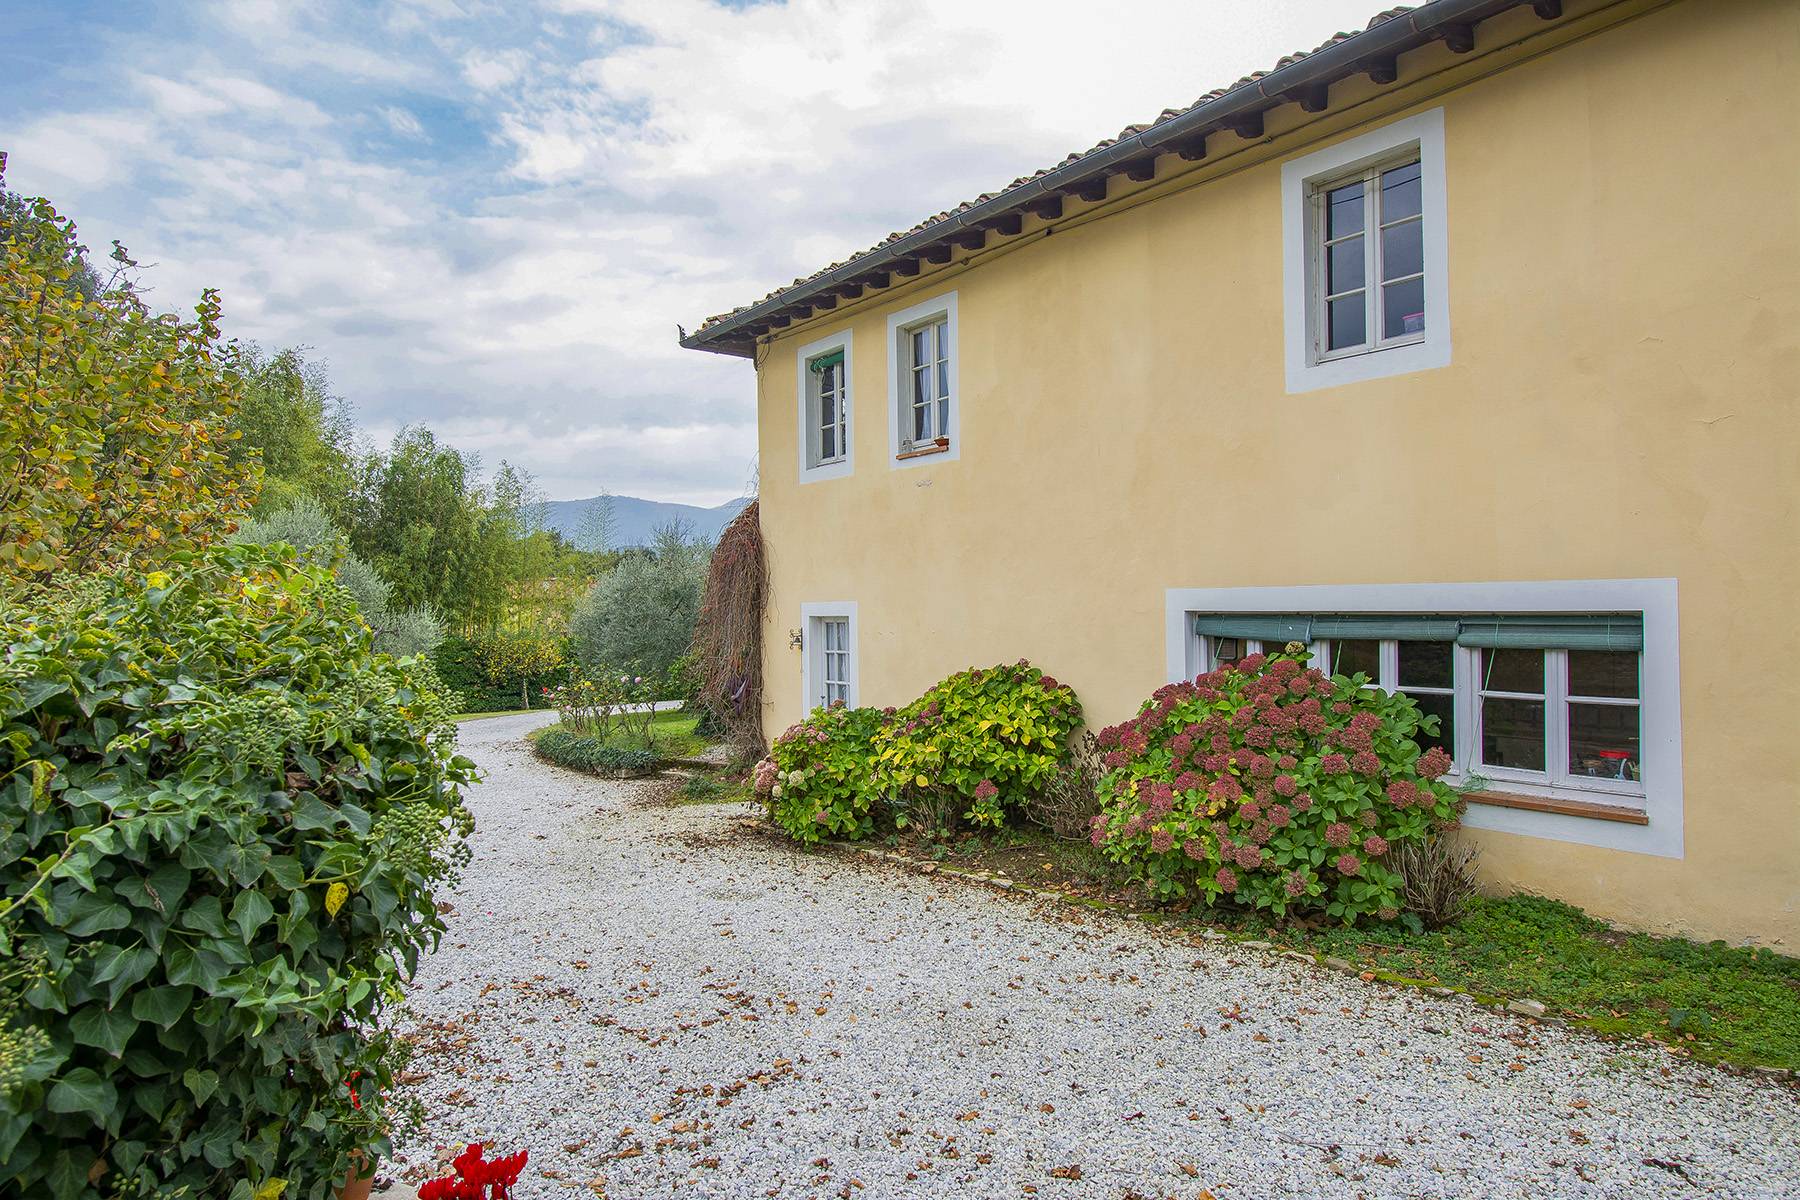 Casa indipendente in Vendita a Lucca: 5 locali, 500 mq - Foto 29